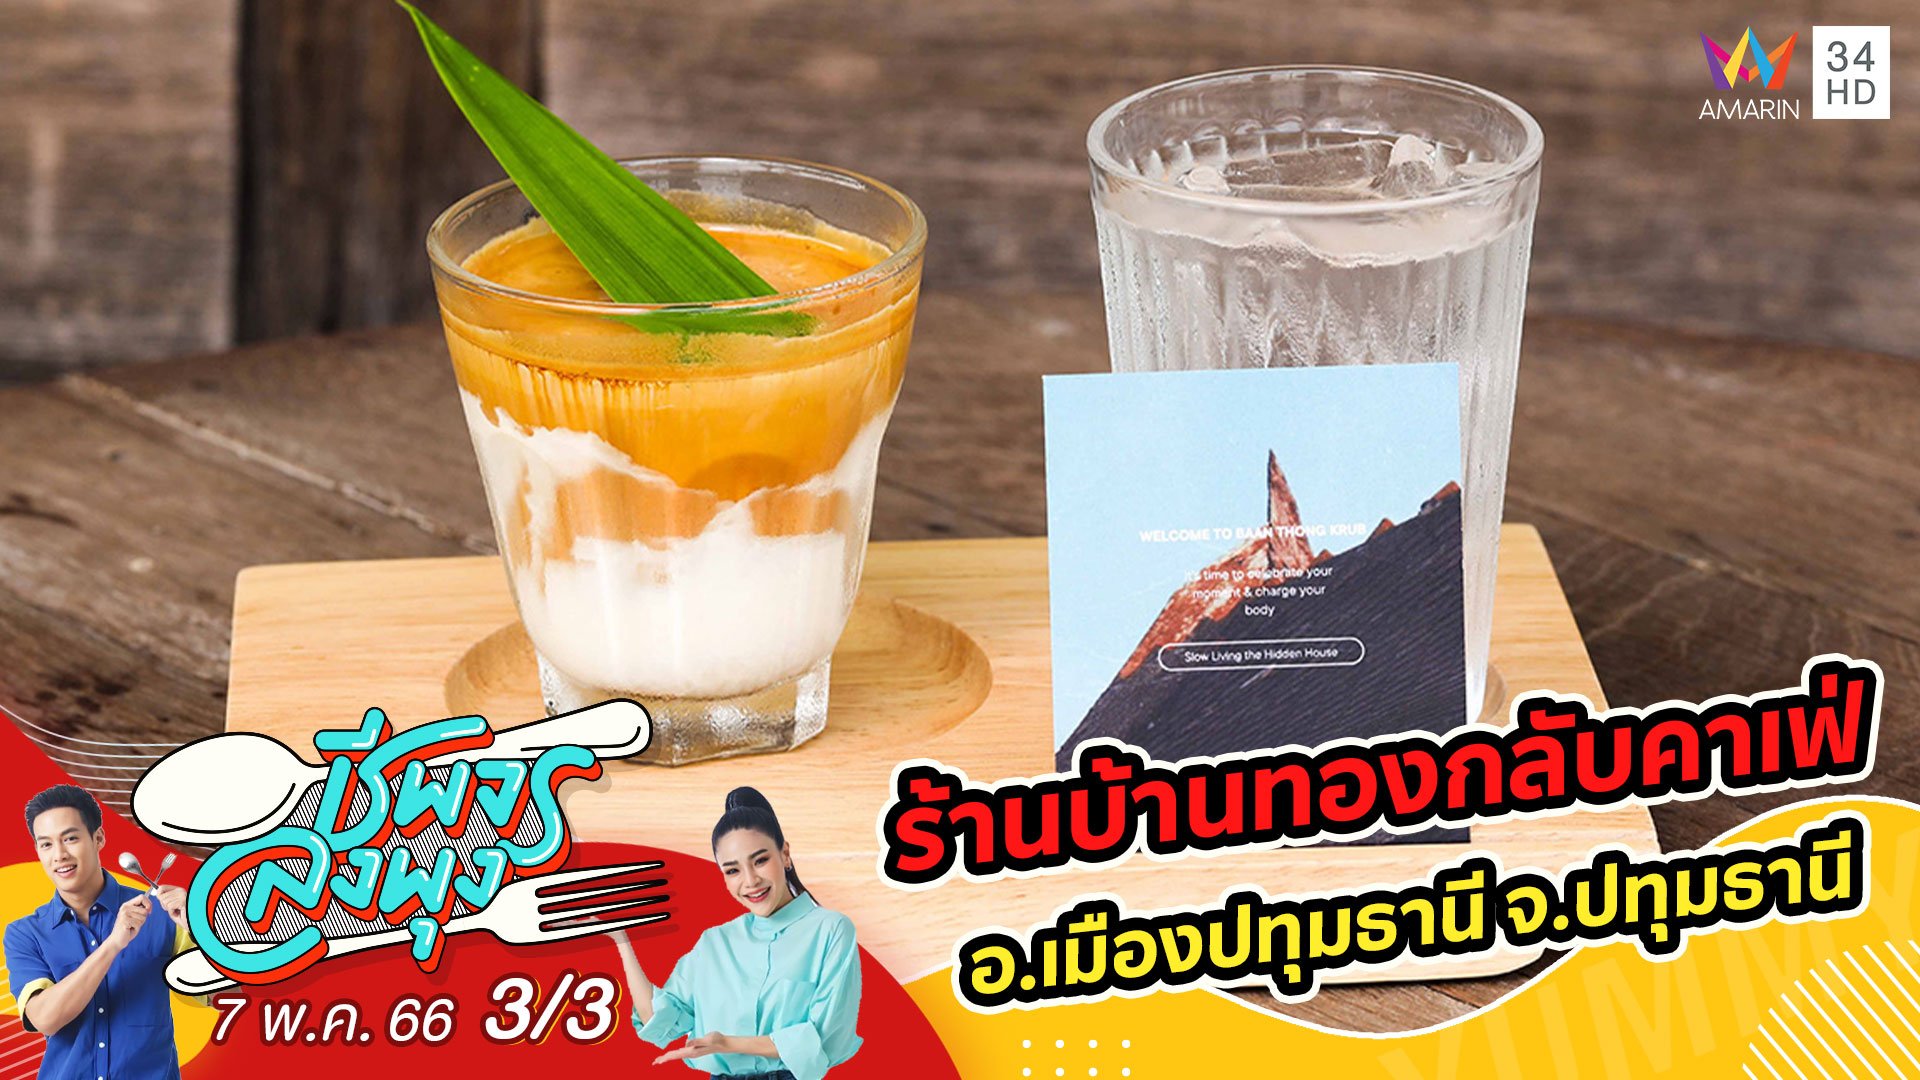 คาเฟ่เรือนไทยริมแม่น้ำเจ้าพระยา @ ร้านบ้านทองกลับคาเฟ่ | ชีพจรลงพุง | 7 พ.ค. 66 (3/3) | AMARIN TVHD34